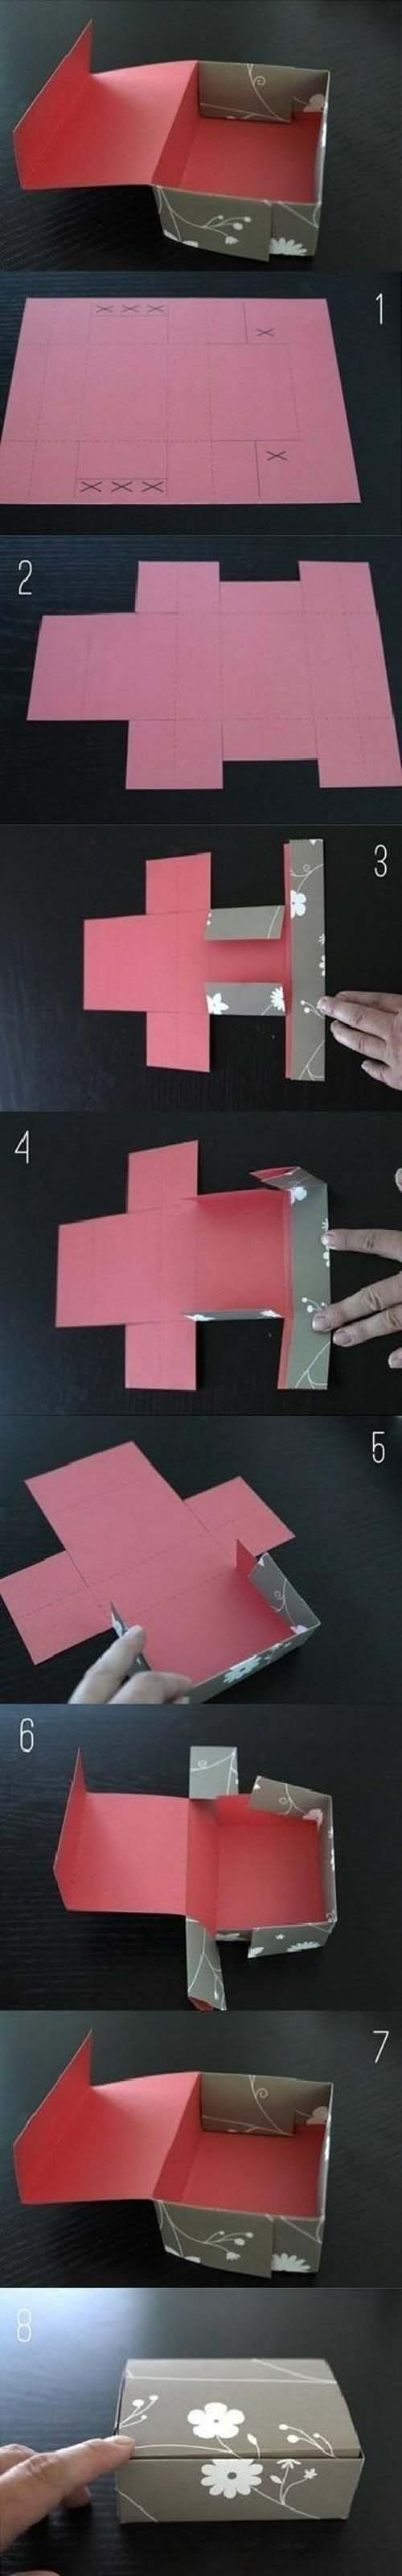 儿童折纸包装纸盒的折法图解教程-www.qqscb.com